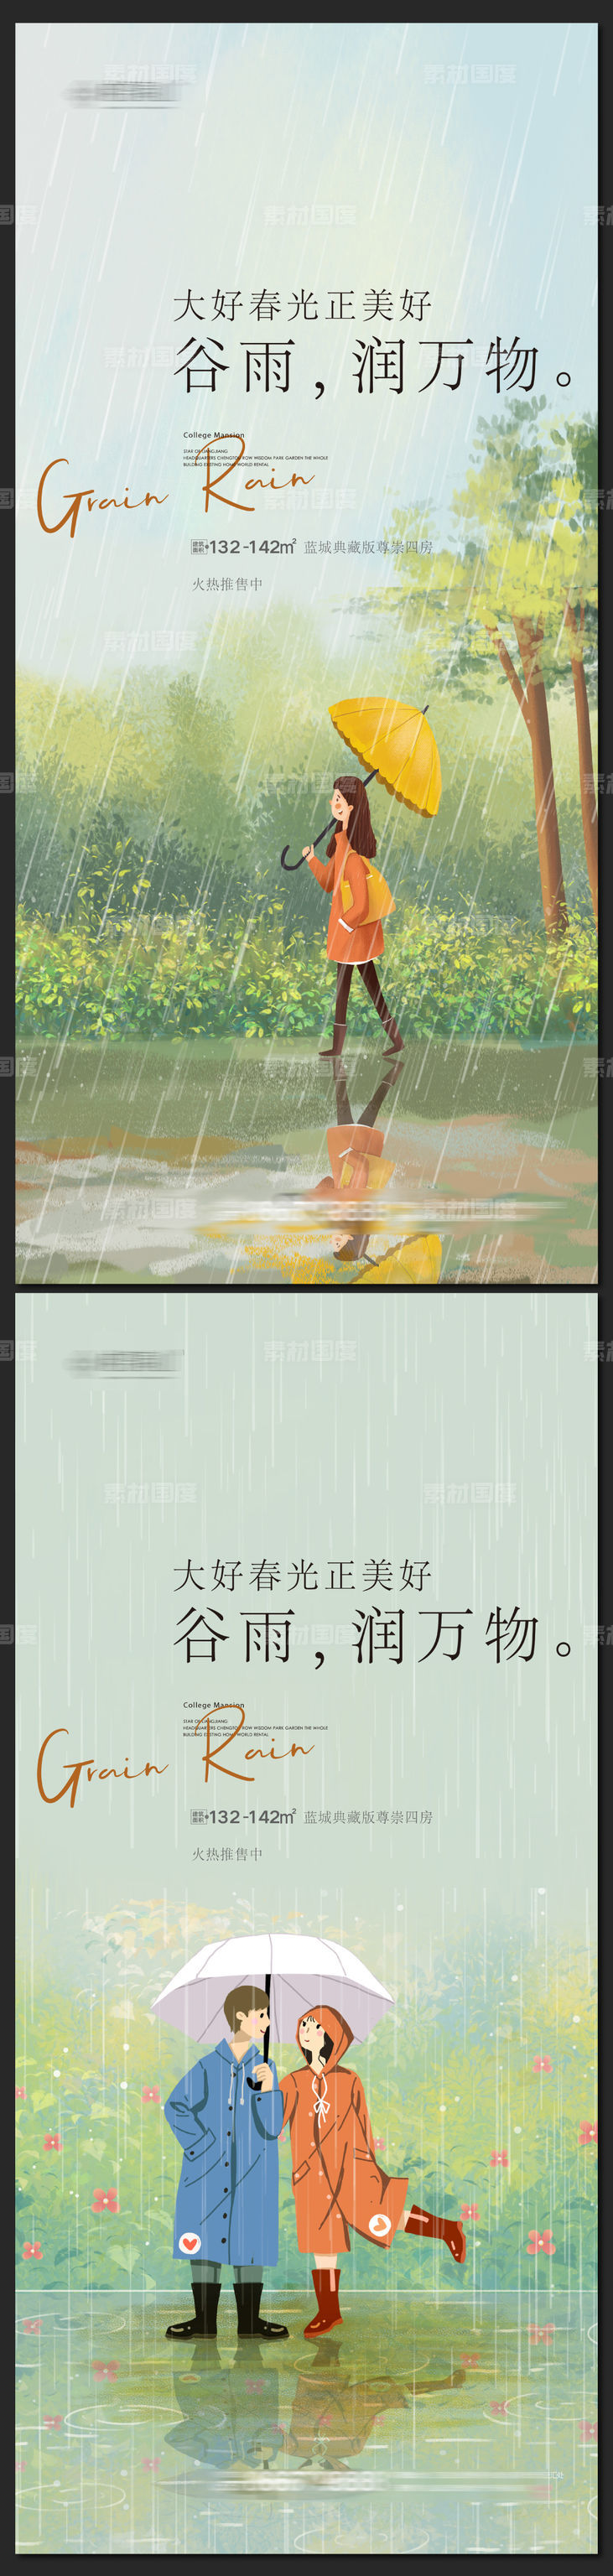 谷雨插画风格节气海报